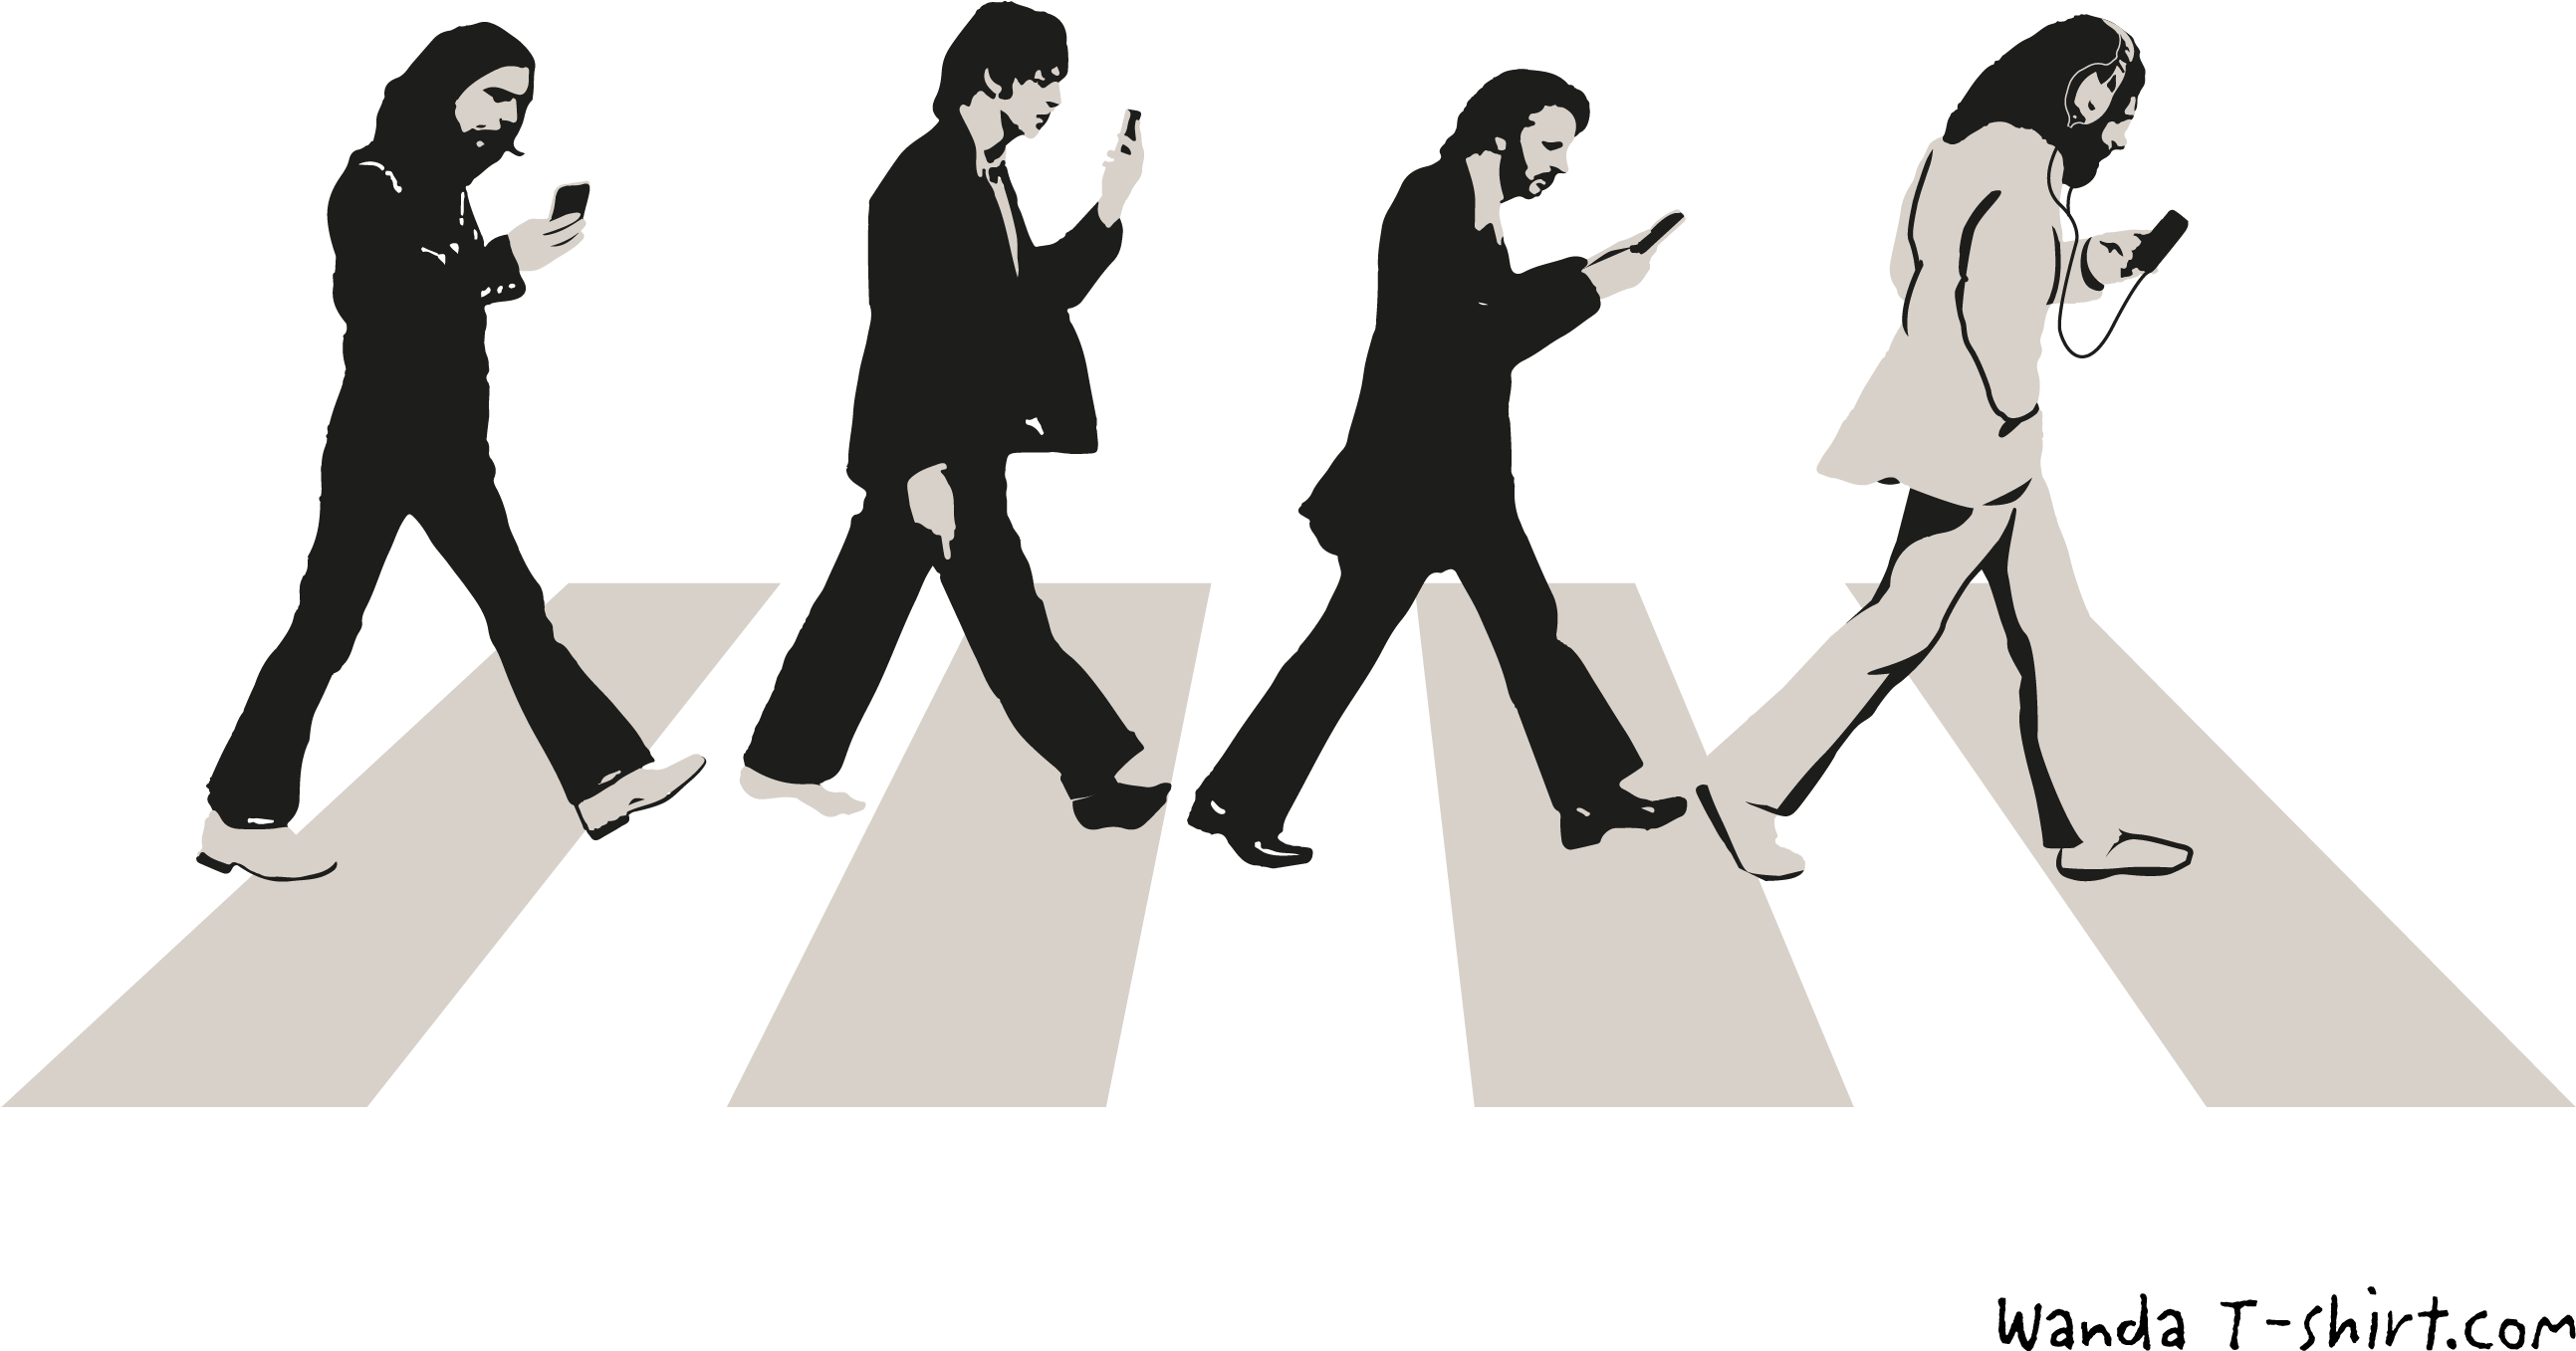 A Group Of People Walking On A Crosswalk